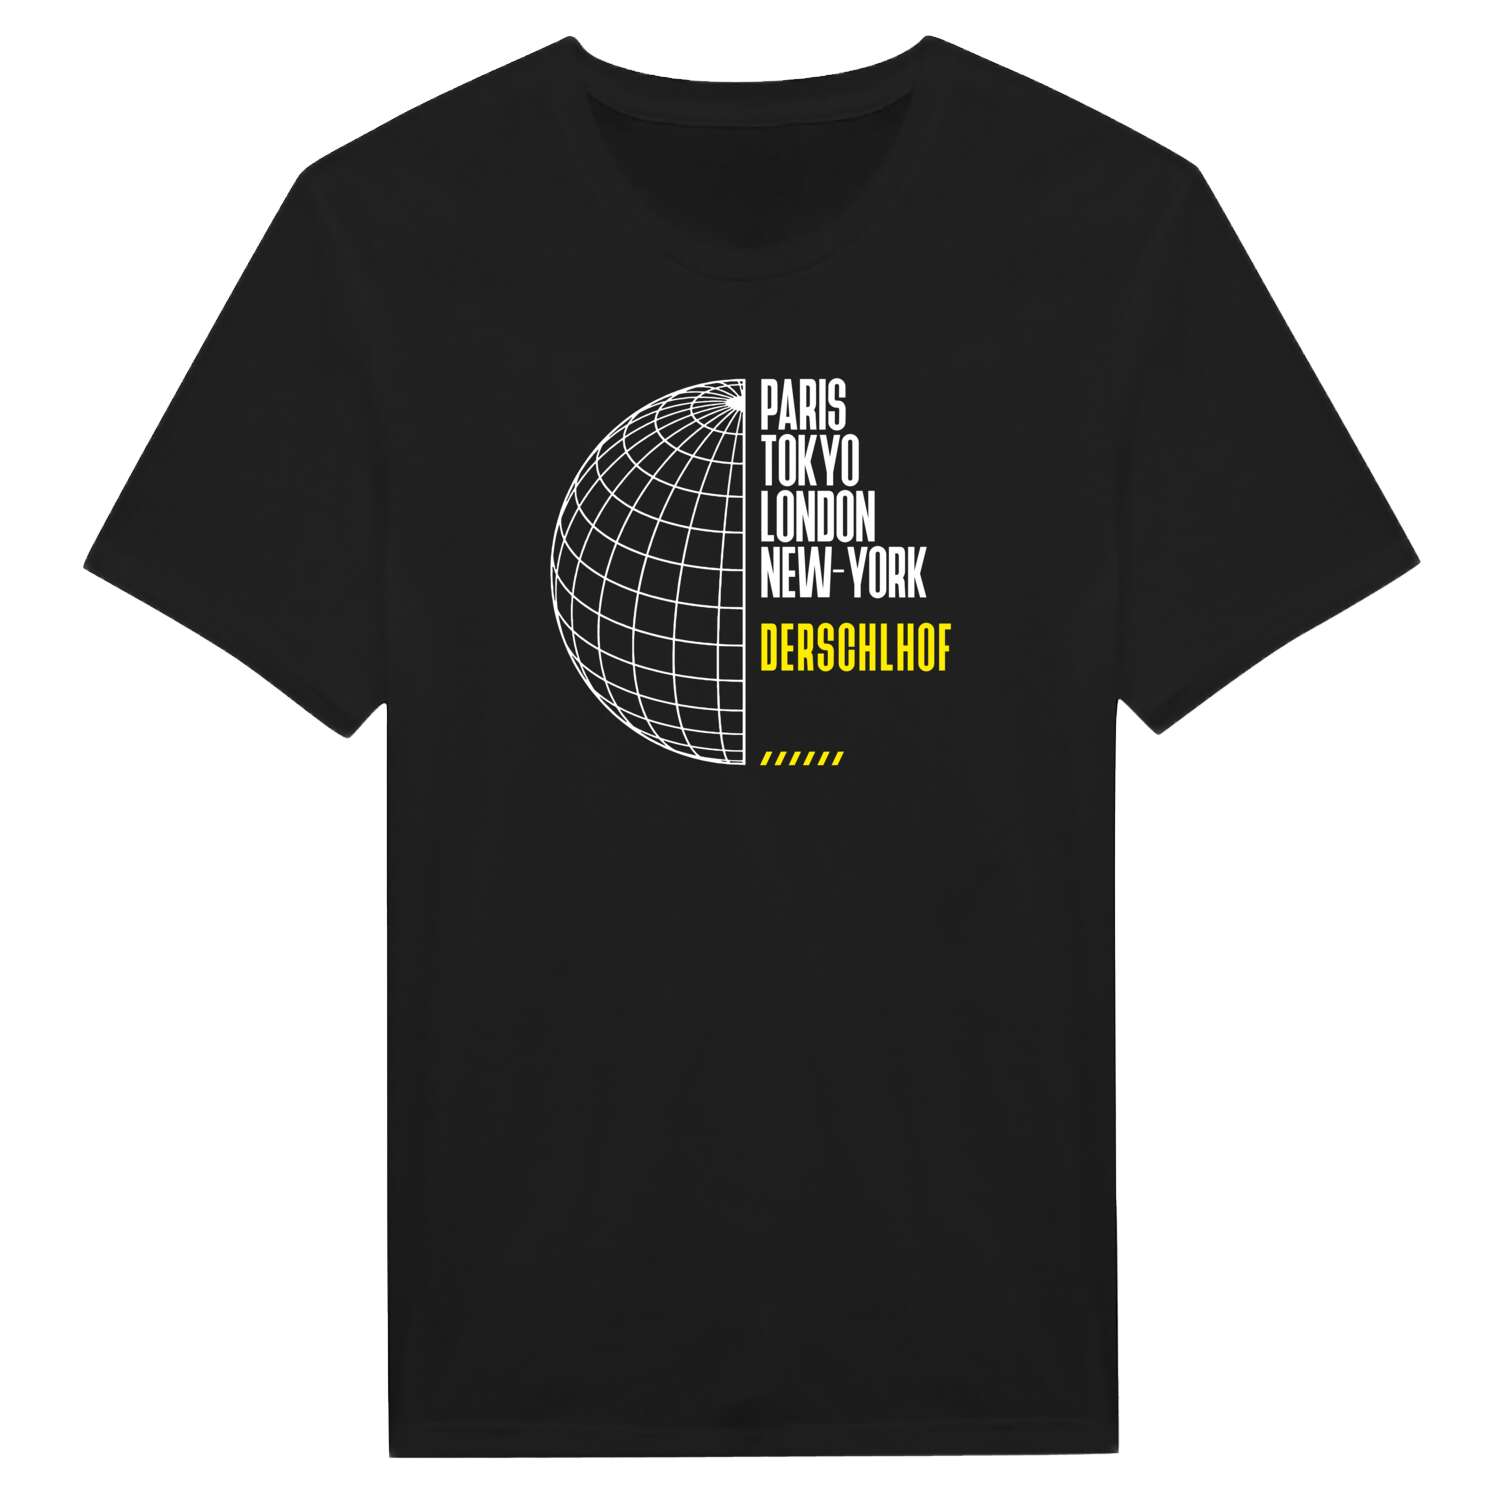 Derschlhof T-Shirt »Paris Tokyo London«